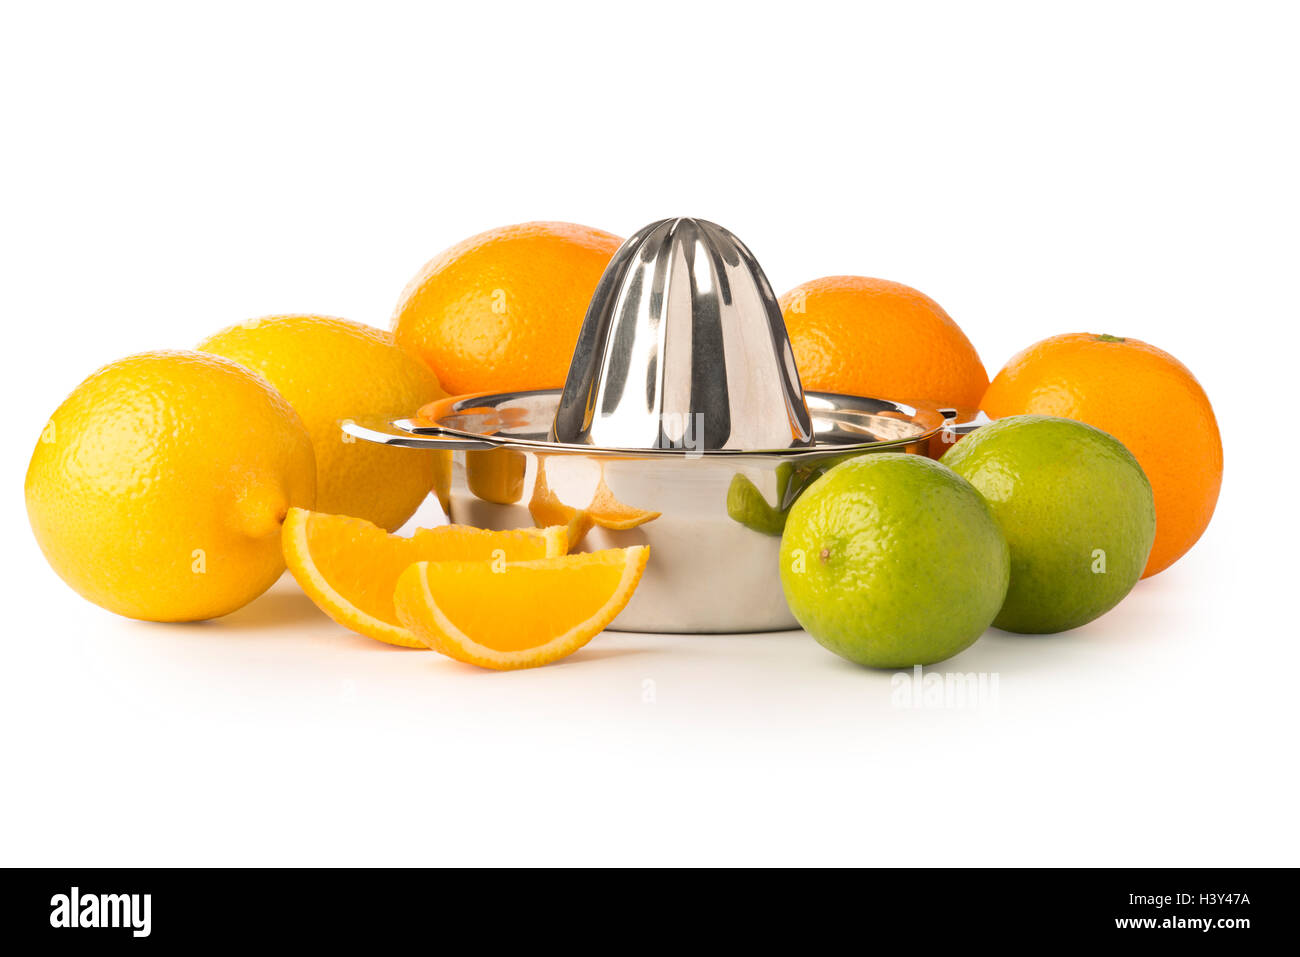 Ausschnitt aus einer Edelstahl orange oder Zitrone Hand Saftpresse umgeben von ganzen Zitronen, Orangen, Limetten und ein paar Orangenscheiben. Stockfoto